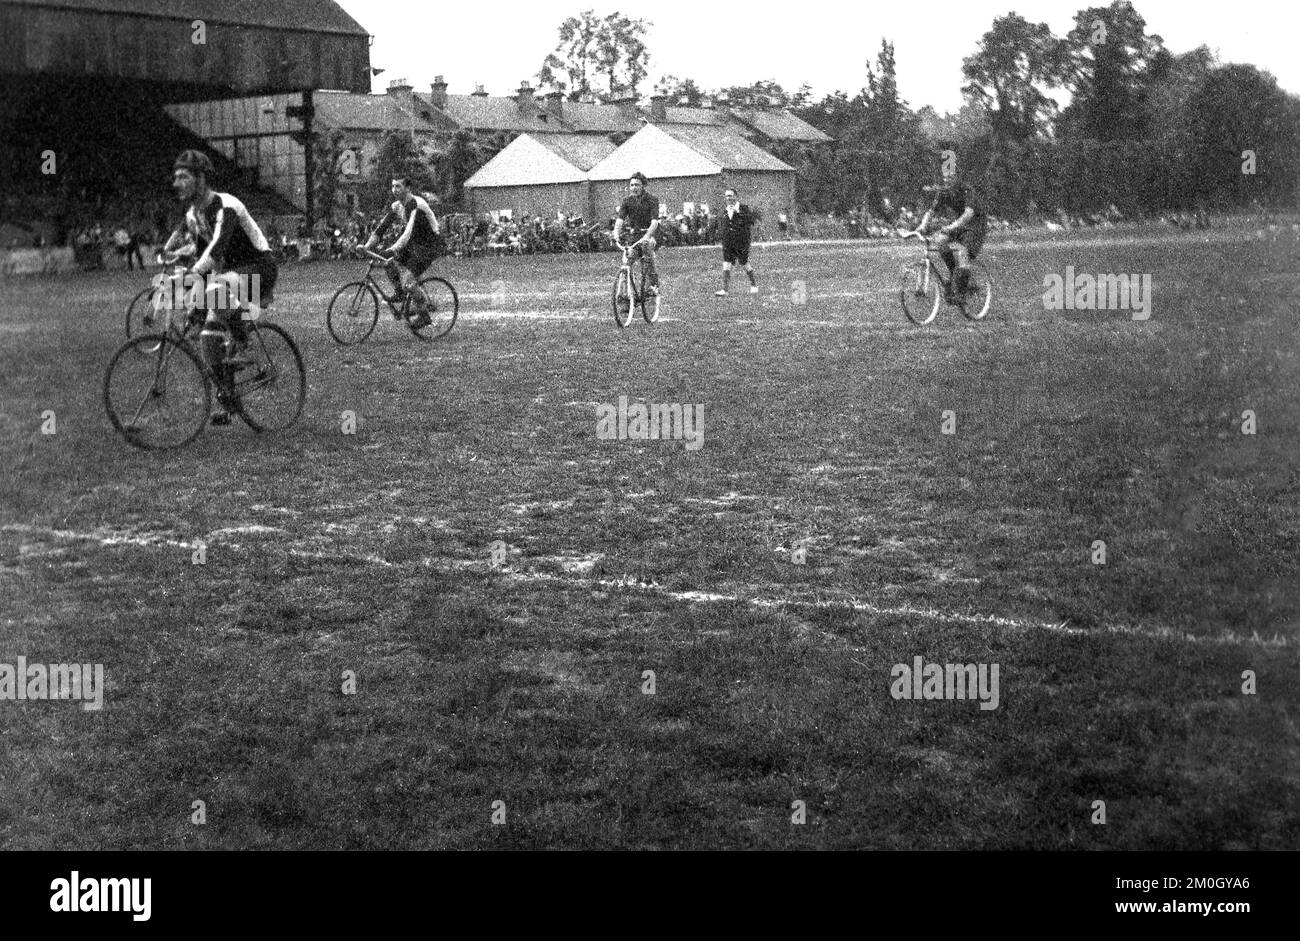 Etwa 1930er, historisch, ein Fahrrad-Polospiel, das draußen auf einem rauen, unebenen Rasenplatz gespielt wird, möglicherweise ein Fußballfeld, da es sich um eine heruntergekommene alte überdachte Haupttribüne in England, Großbritannien, handelt. Das Cycle Polo wurde 1891 in Irland in Co WIckow von Richard J. Mercredy, Herausgeber des Irish Cyclist Magazins, erfunden und war in den 1930er Jahren am beliebtesten. Stockfoto